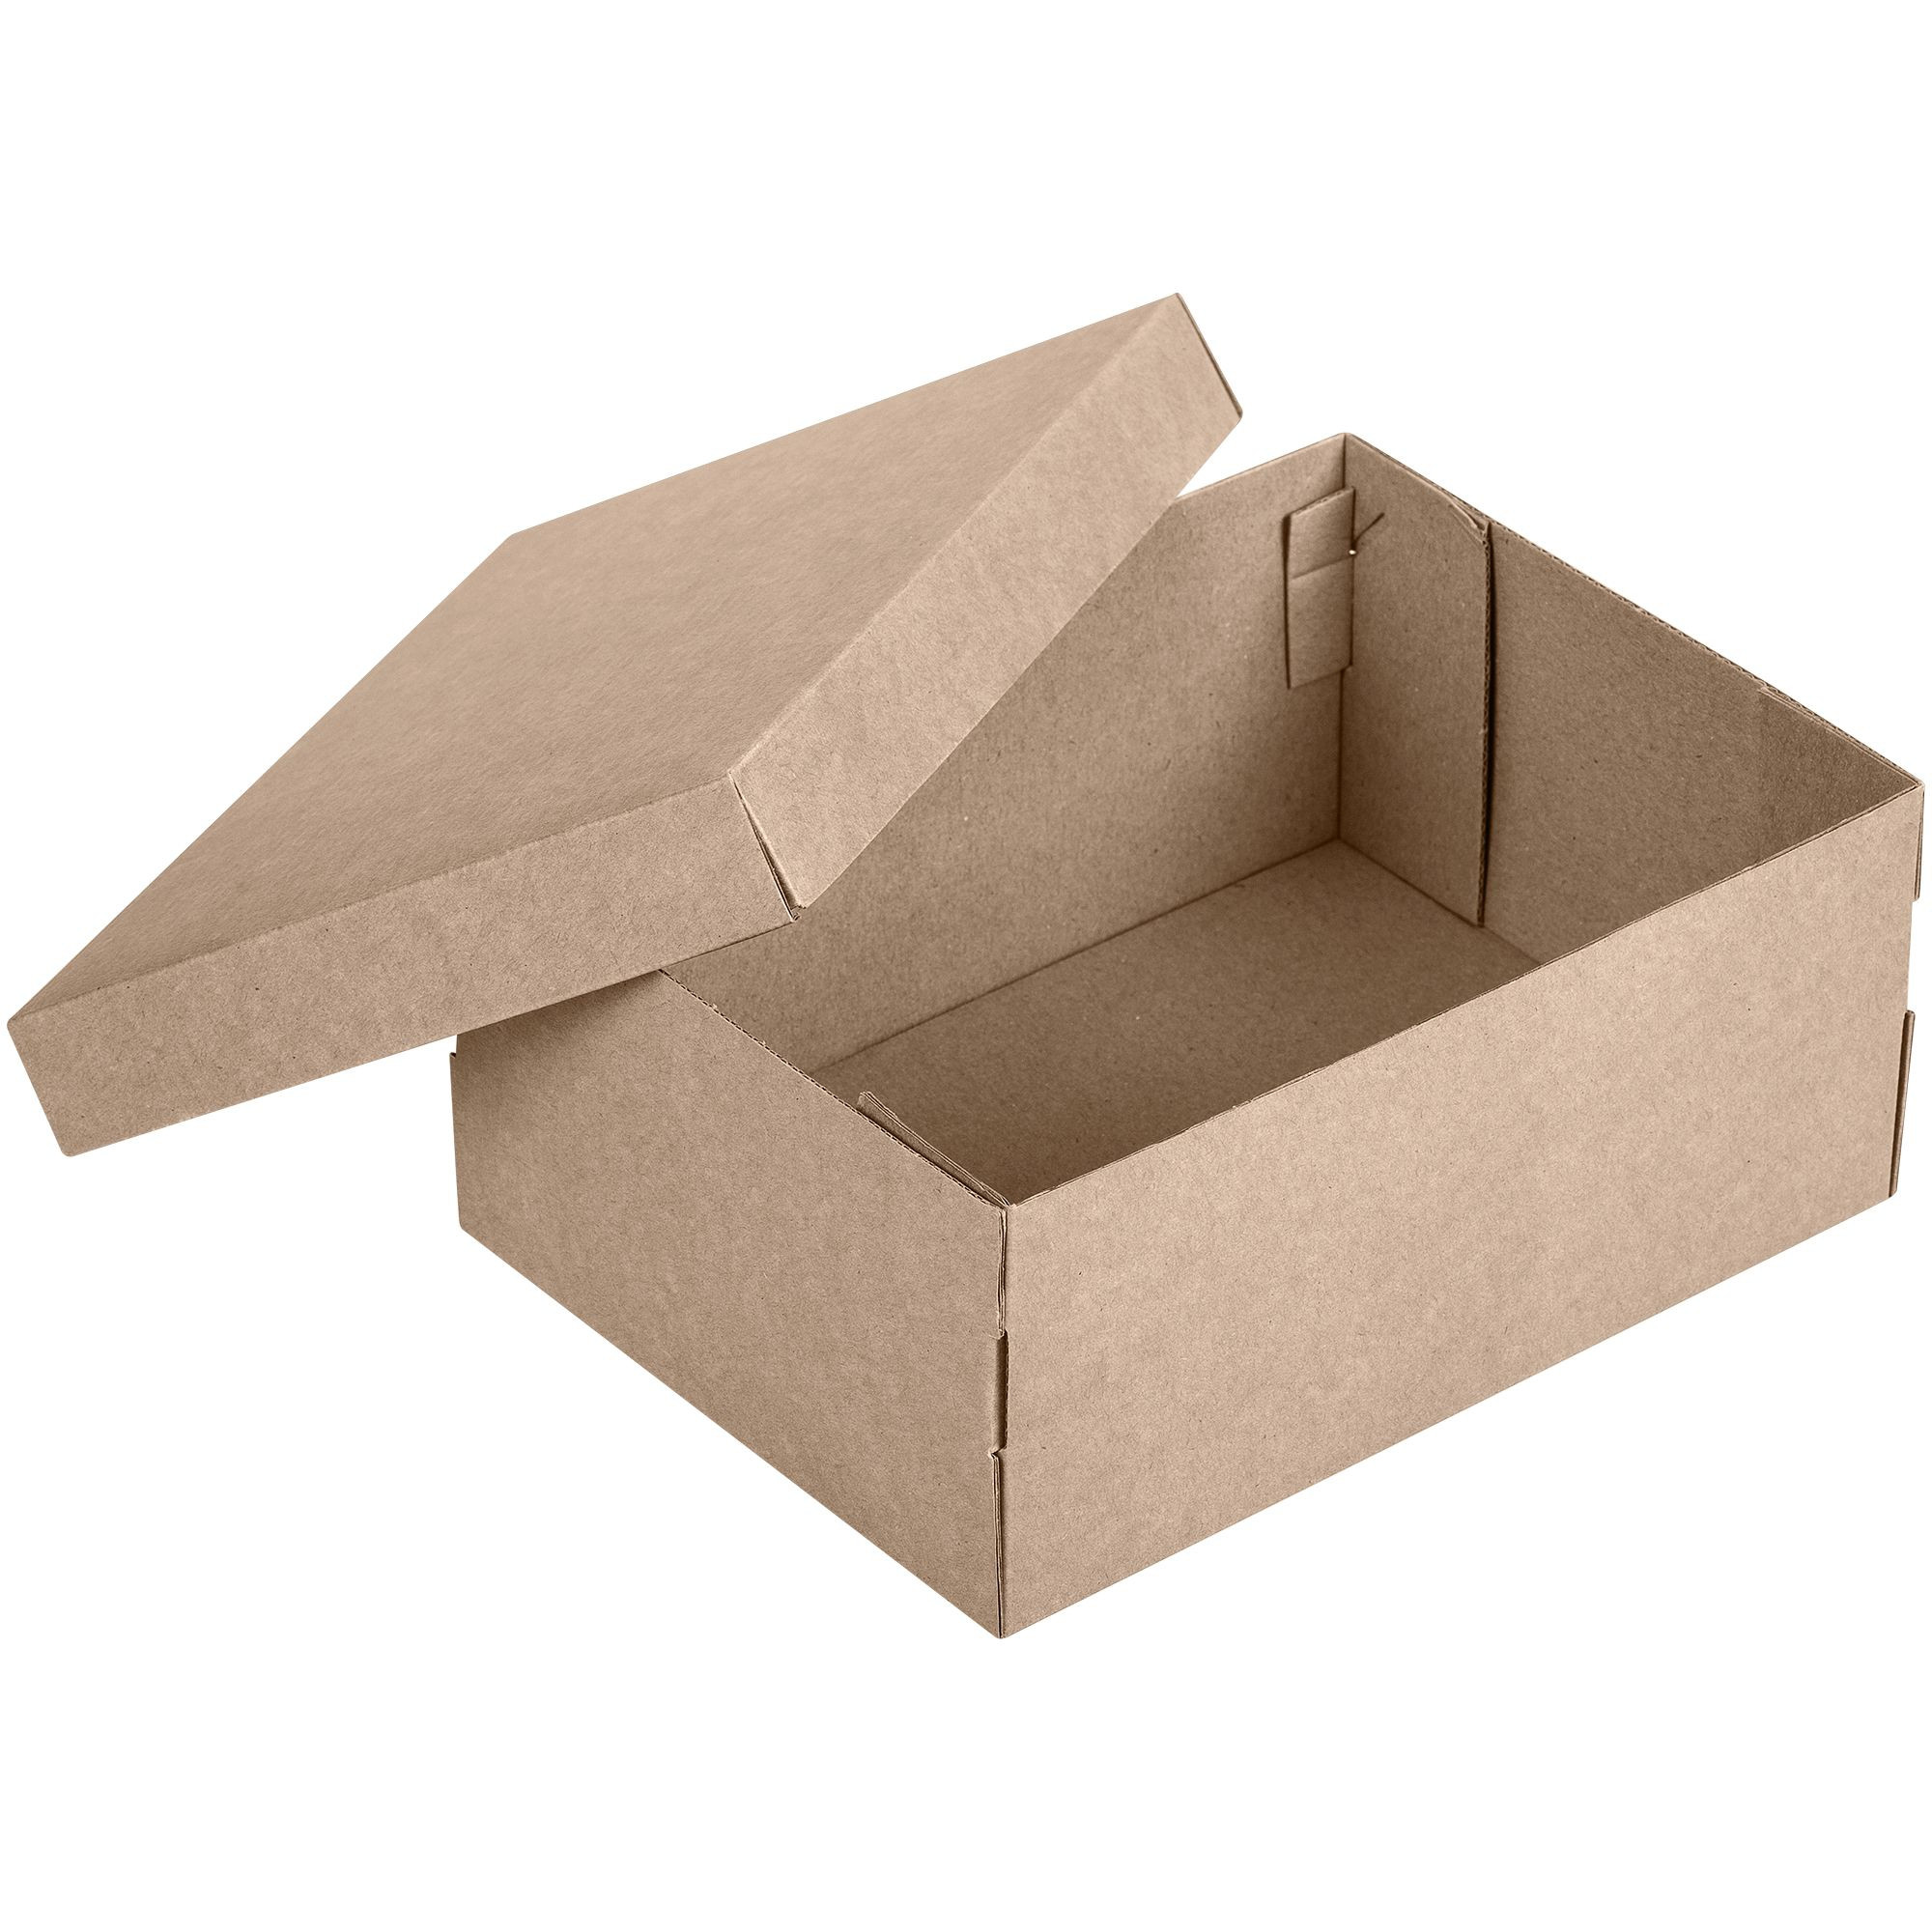 Картинки коробок. Коробка самосборная крафт. Коробка микрогофрокартон крафт. Гофро коробки самосборные 22.5 х 22 х 7 см. Коробка подарочная крафт микрогофрокартон.